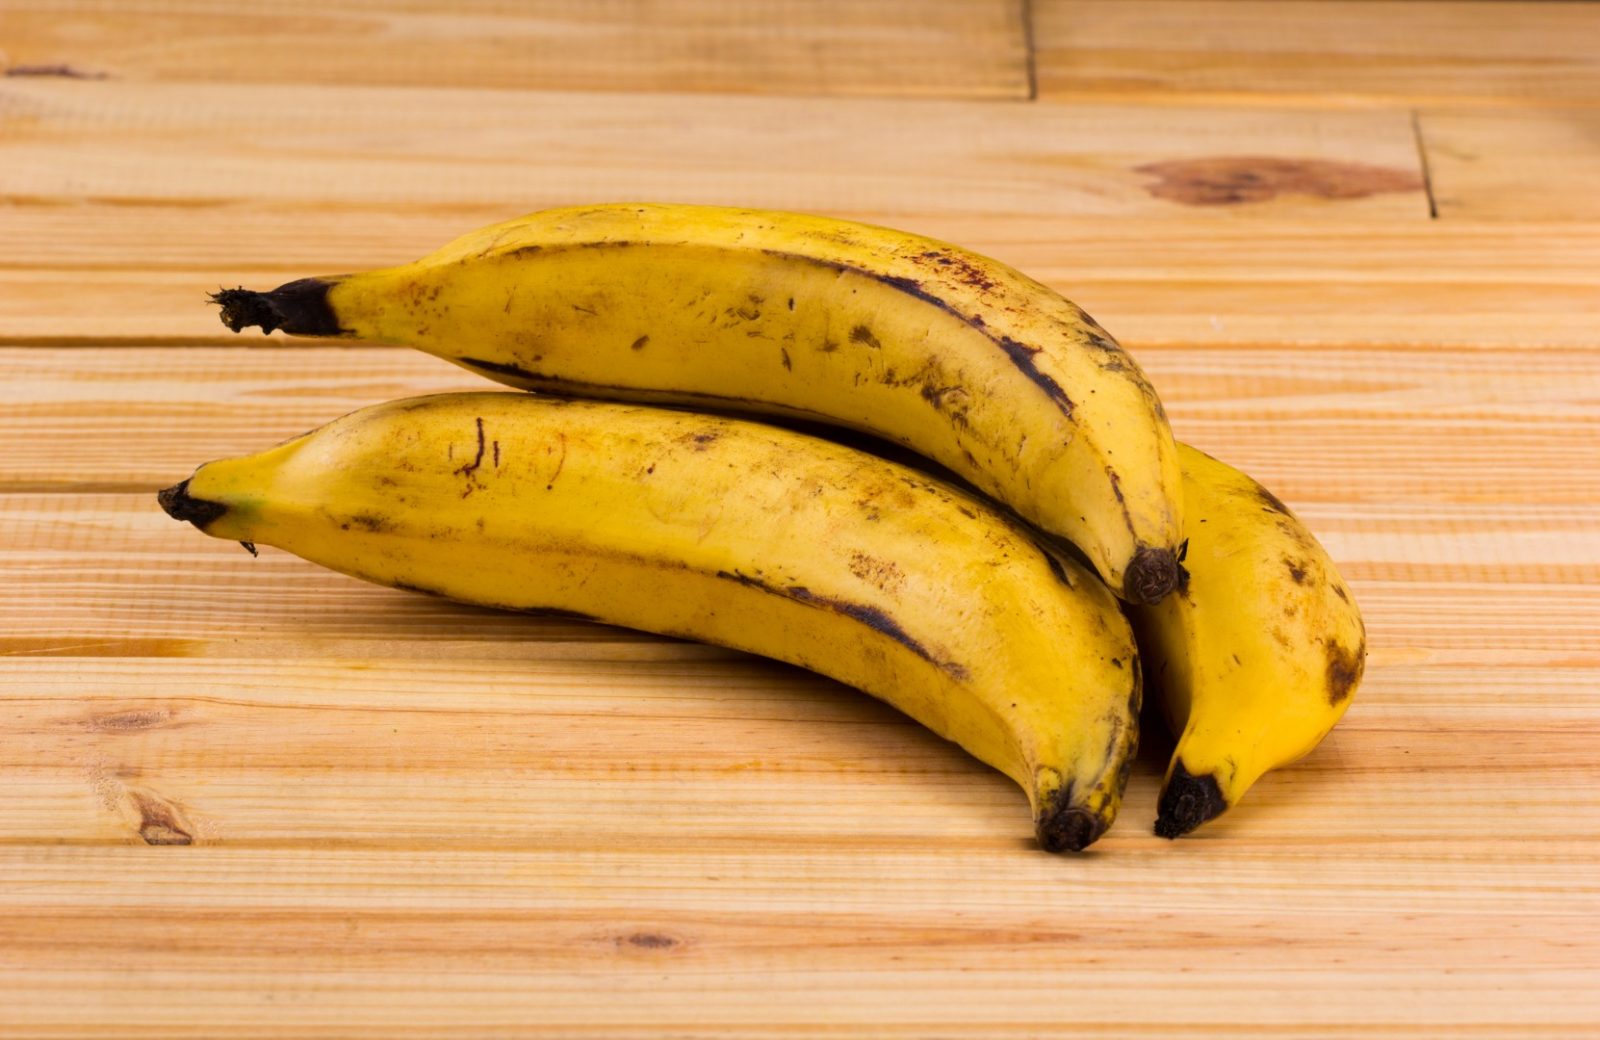 ТОП-5 способов, как дольше сохранить бананы свежими